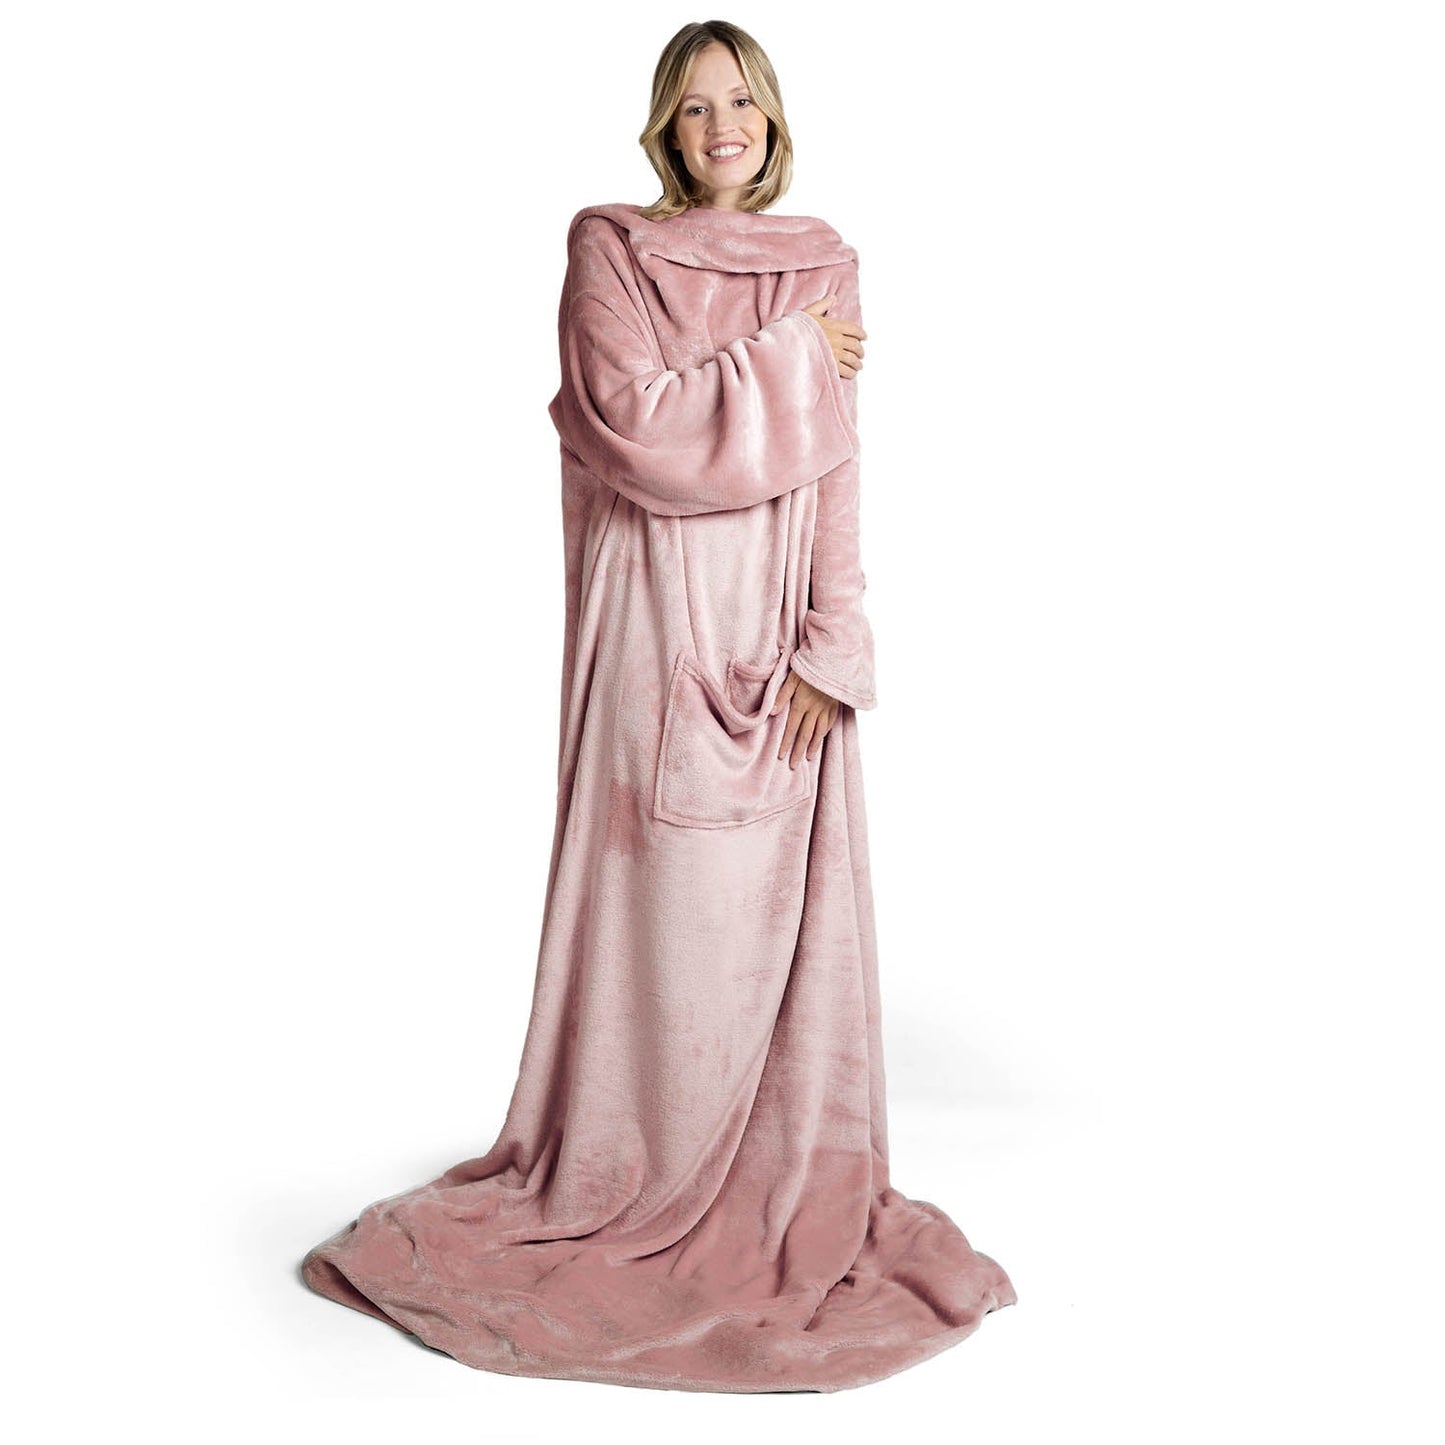 Lächelnde Frau in einem übergroßen rosa flauschigen Kleidungsstück das bis zum Boden reicht steht vor weißem Hintergrund.